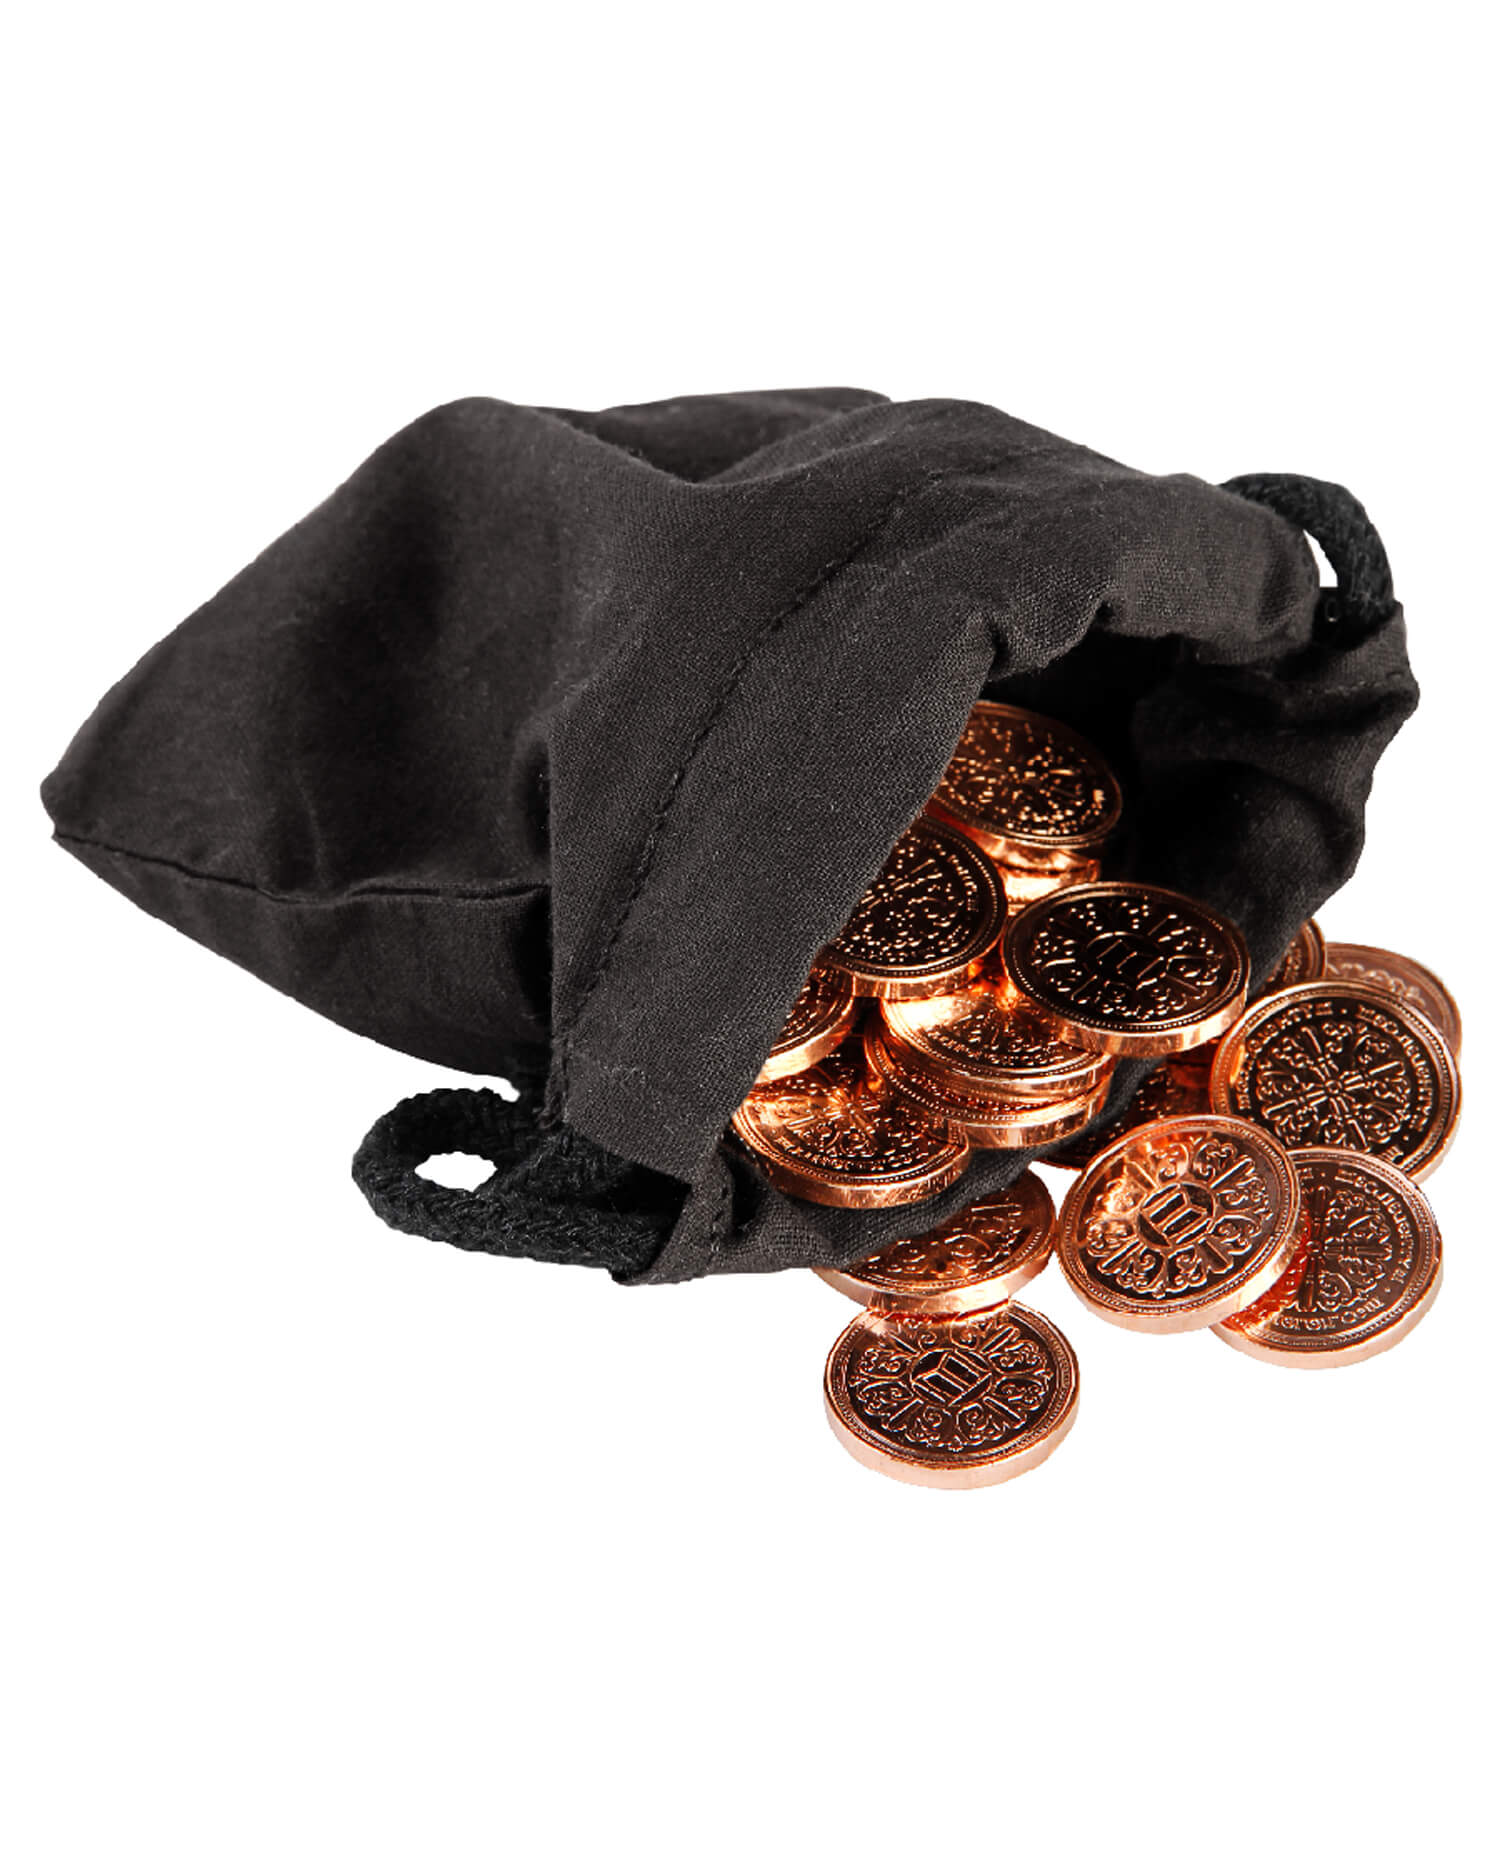 10 monedas de cobre con bolsa de tela negra